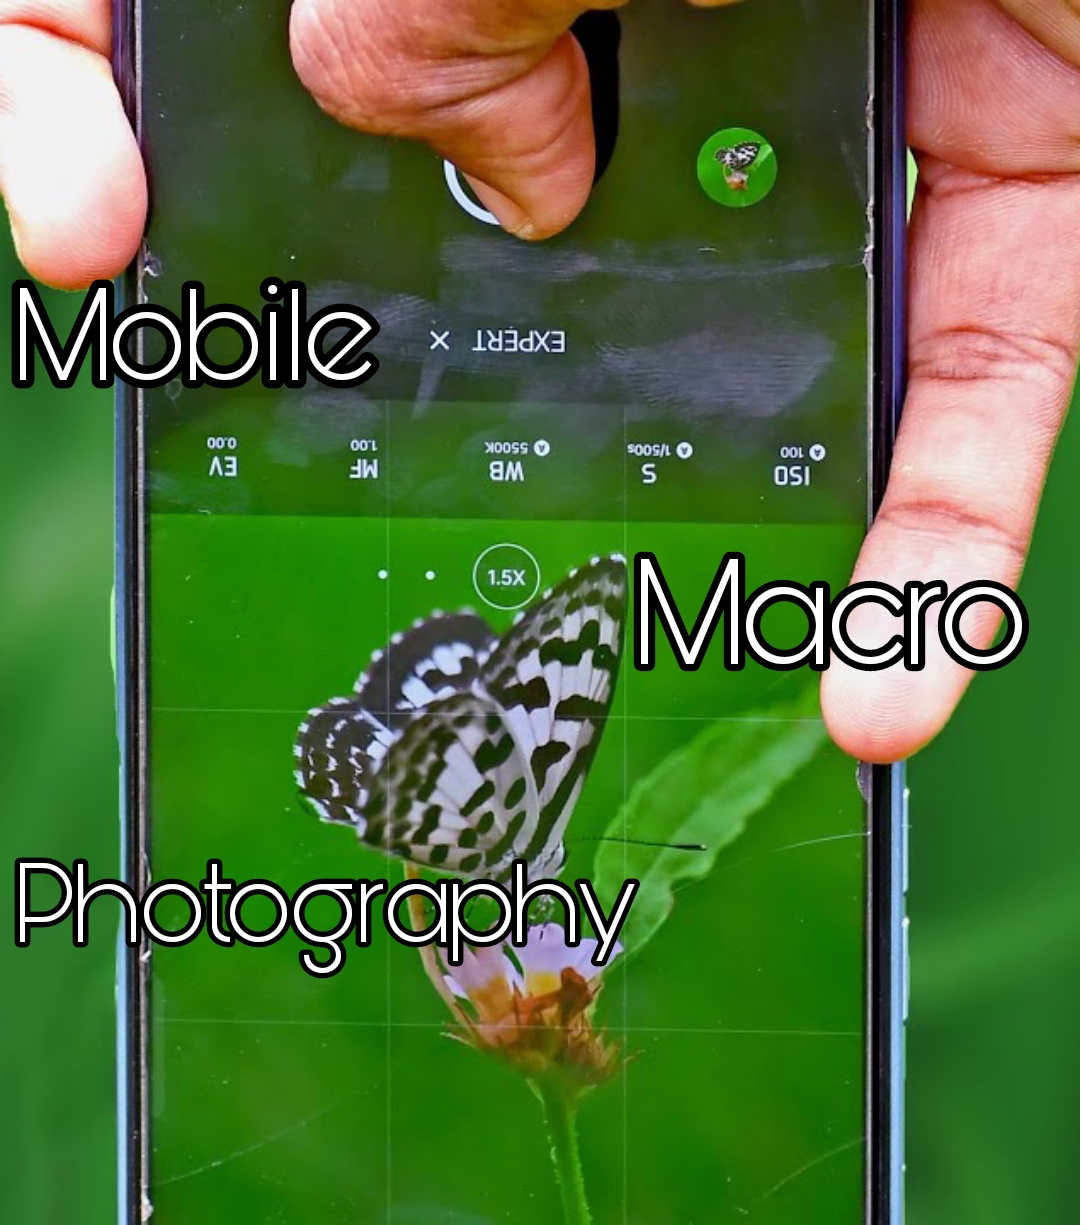 লেন্স ছাড়াই মোবাইল দিয়ে ম্যাক্রো ফটোগ্রাফি❤️। Macro Photography in mobile without lens